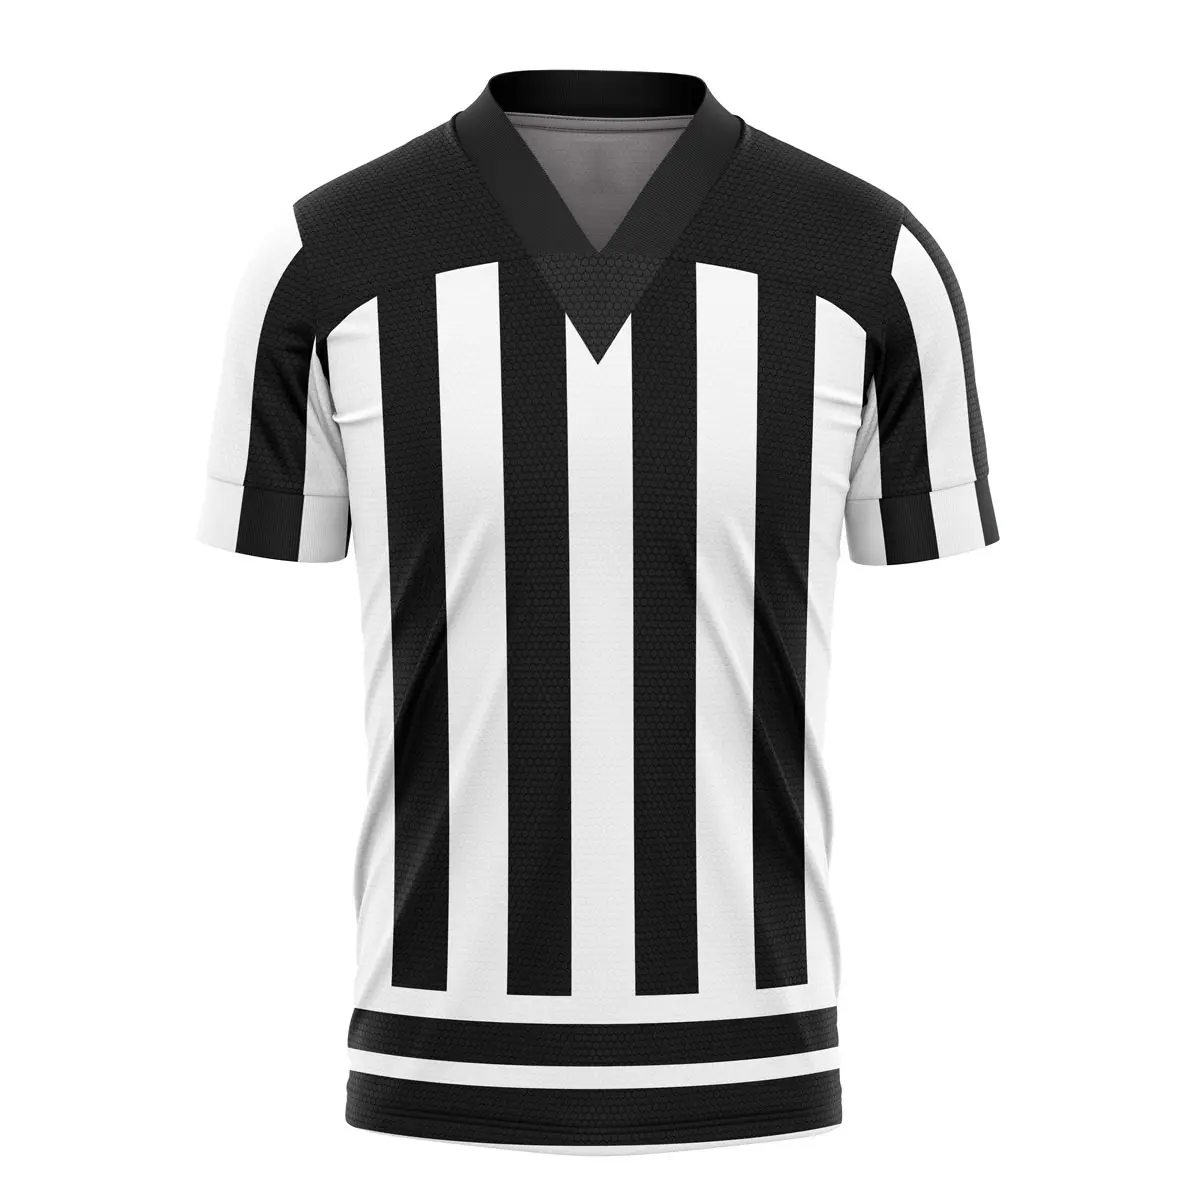 Vêtements de sports d'équipe de qualité supérieure avec numéros et nom prix de fabrication d'usine meilleure vente nouvelle arrivée uniforme de football